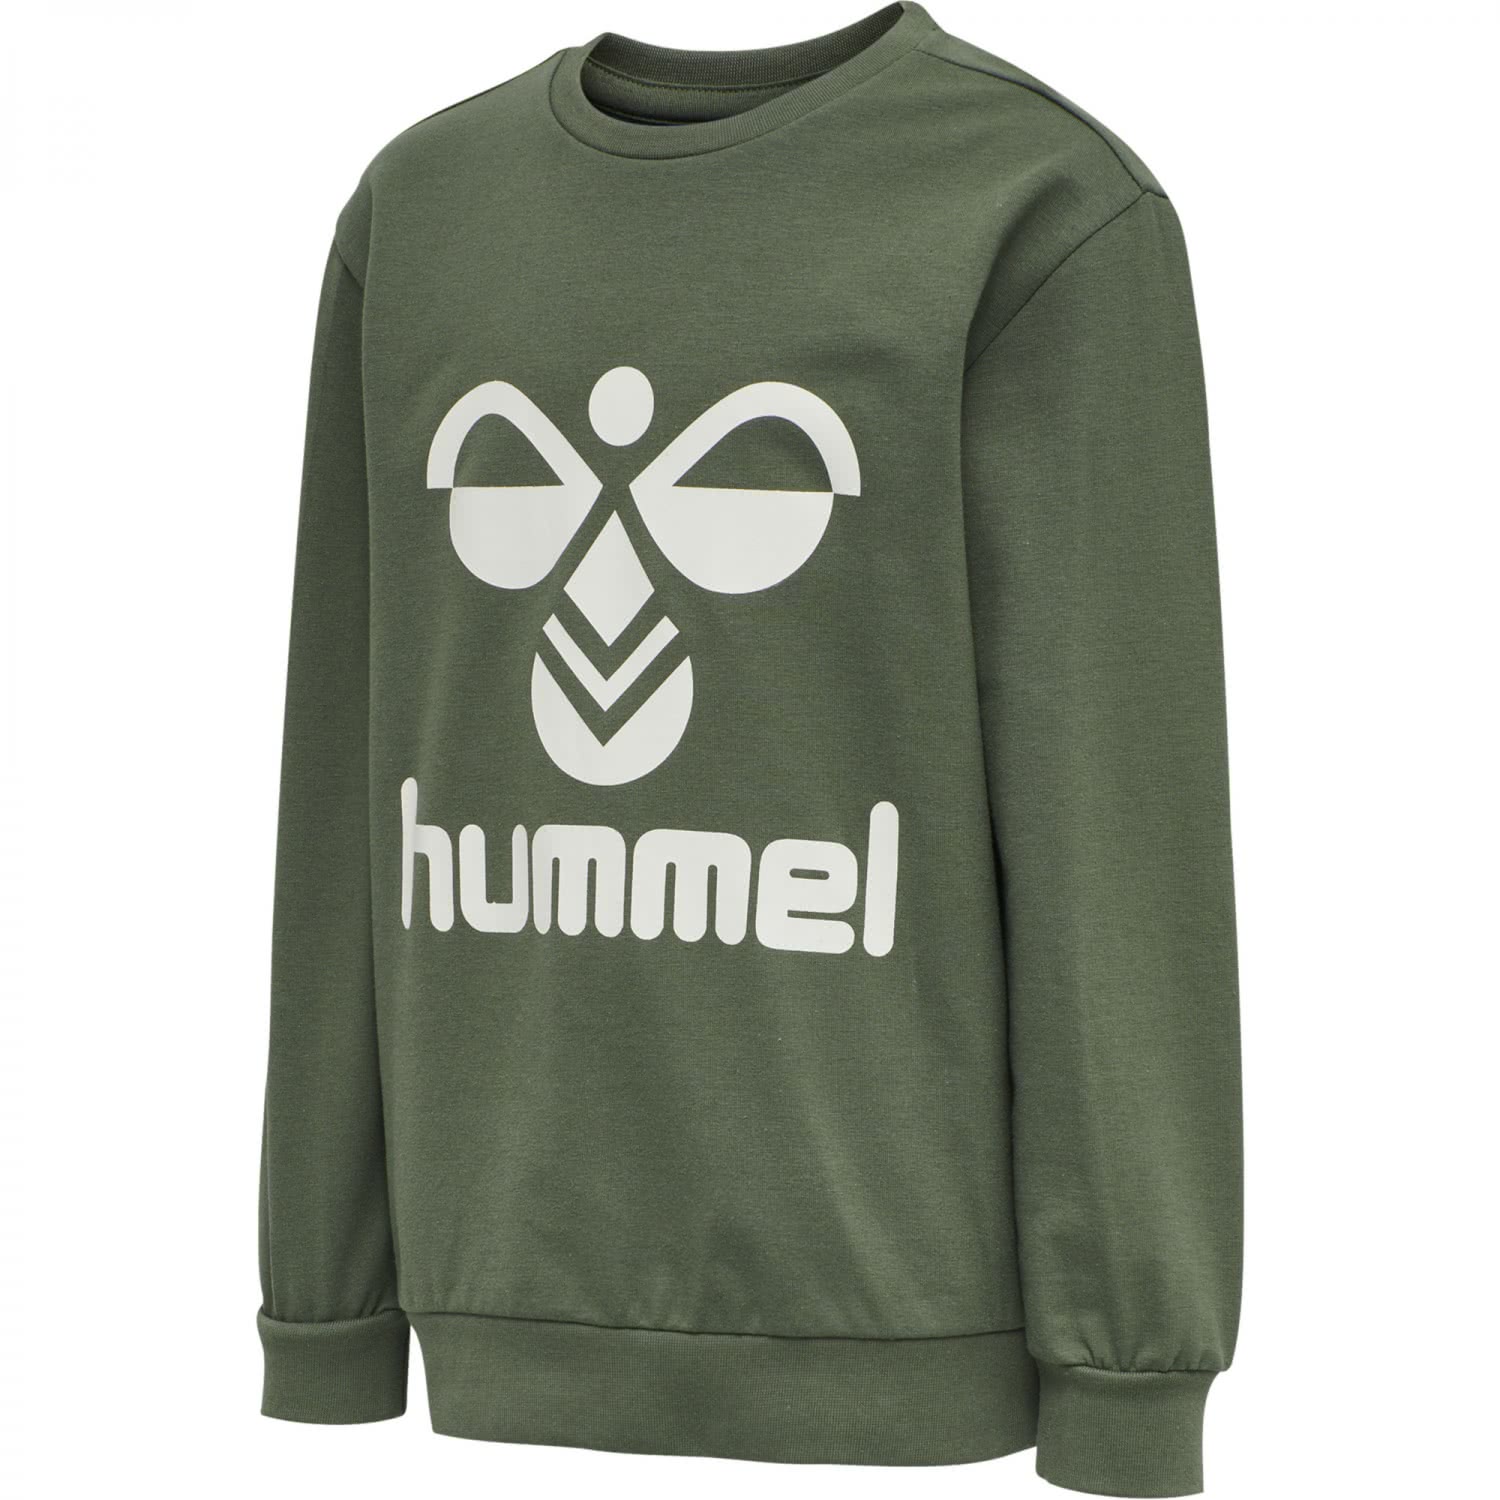 Hummel Kinder Sweatshirt Dos 203659 | eBay